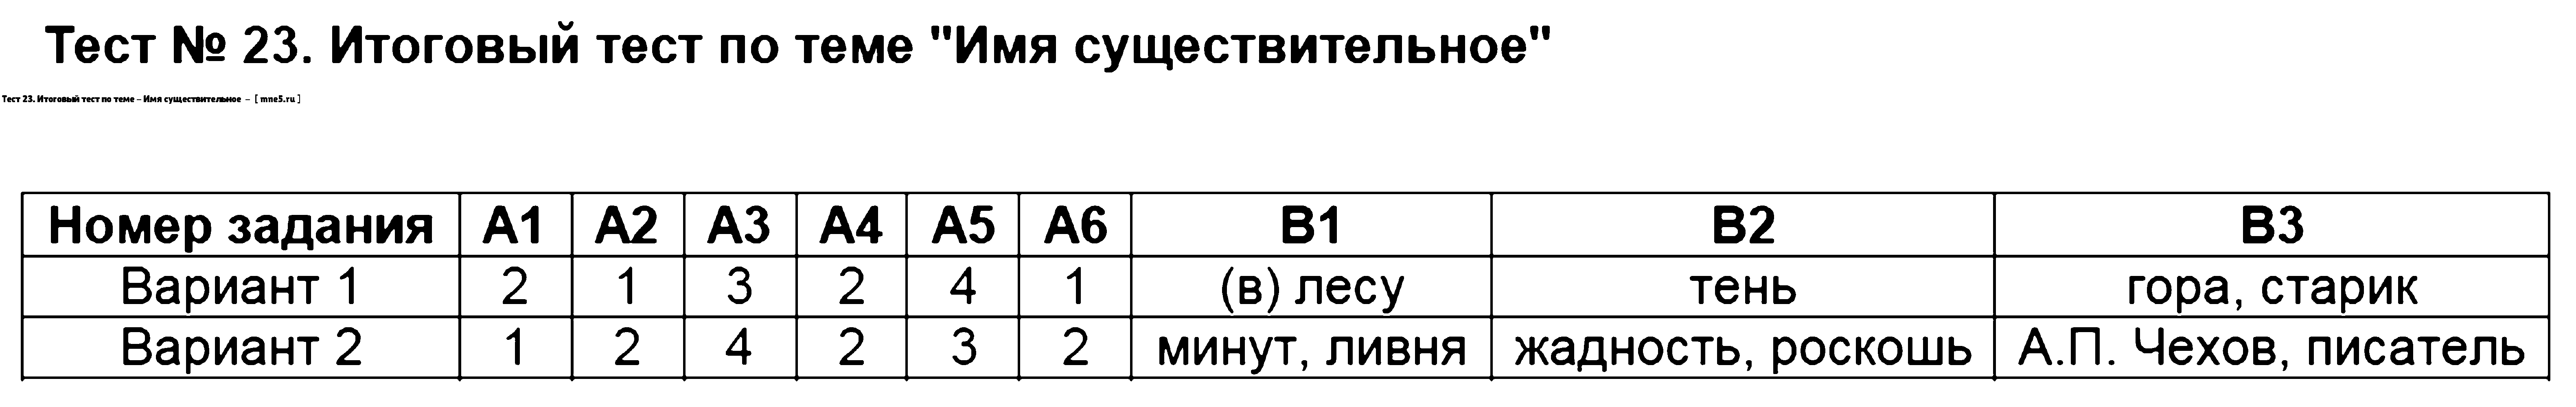 ГДЗ Русский язык 5 класс - Тест 23. Итоговый тест по теме - Имя существительное